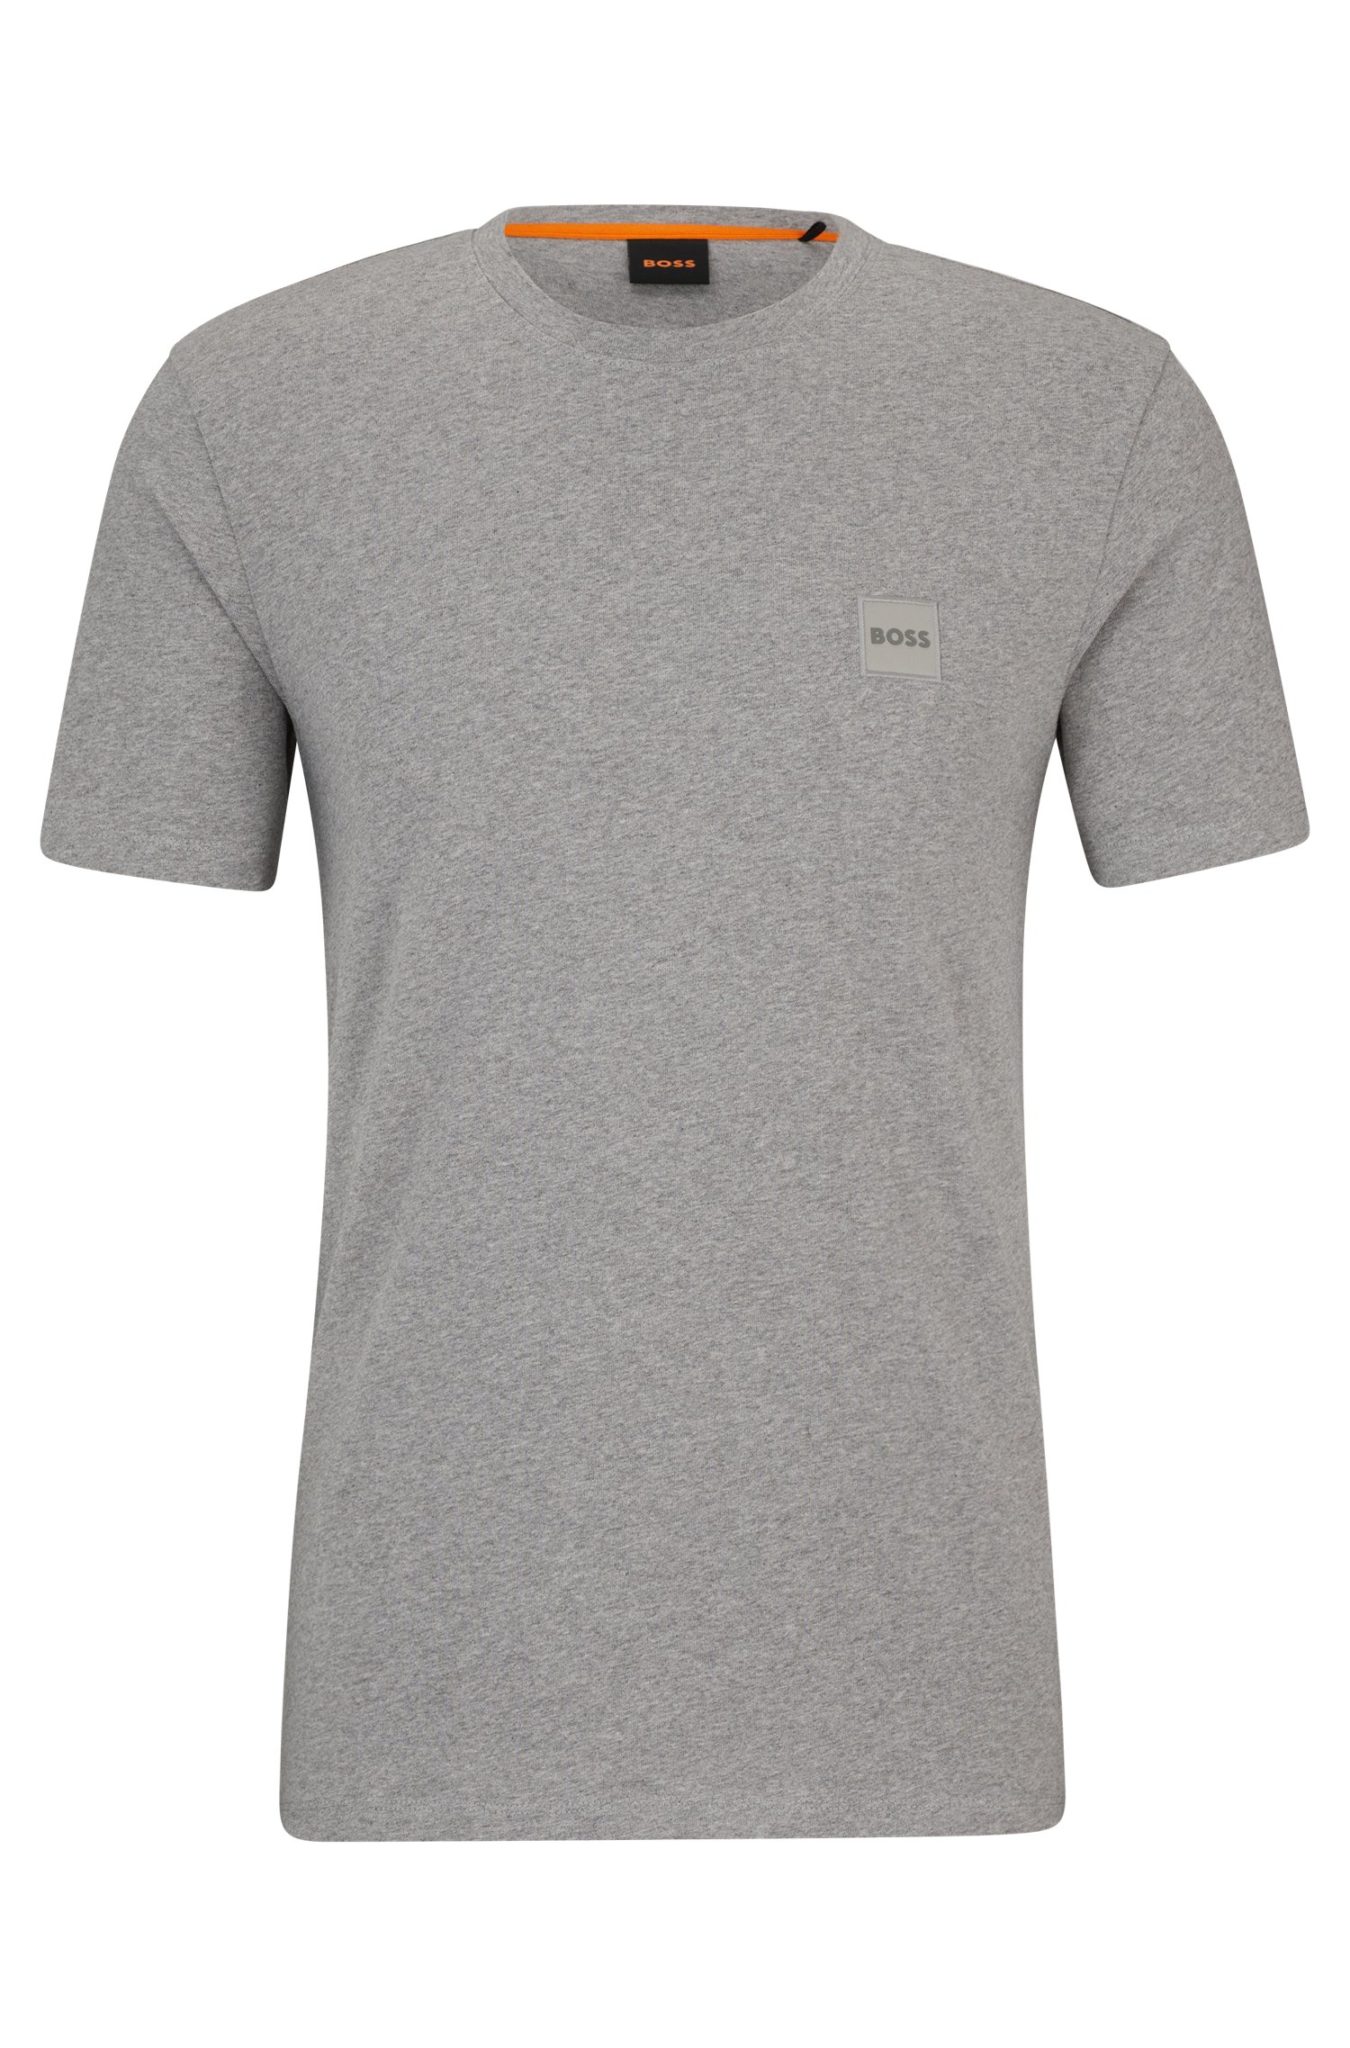 Hugo Boss T-shirt Relaxed Fit en jersey de coton avec patch logo